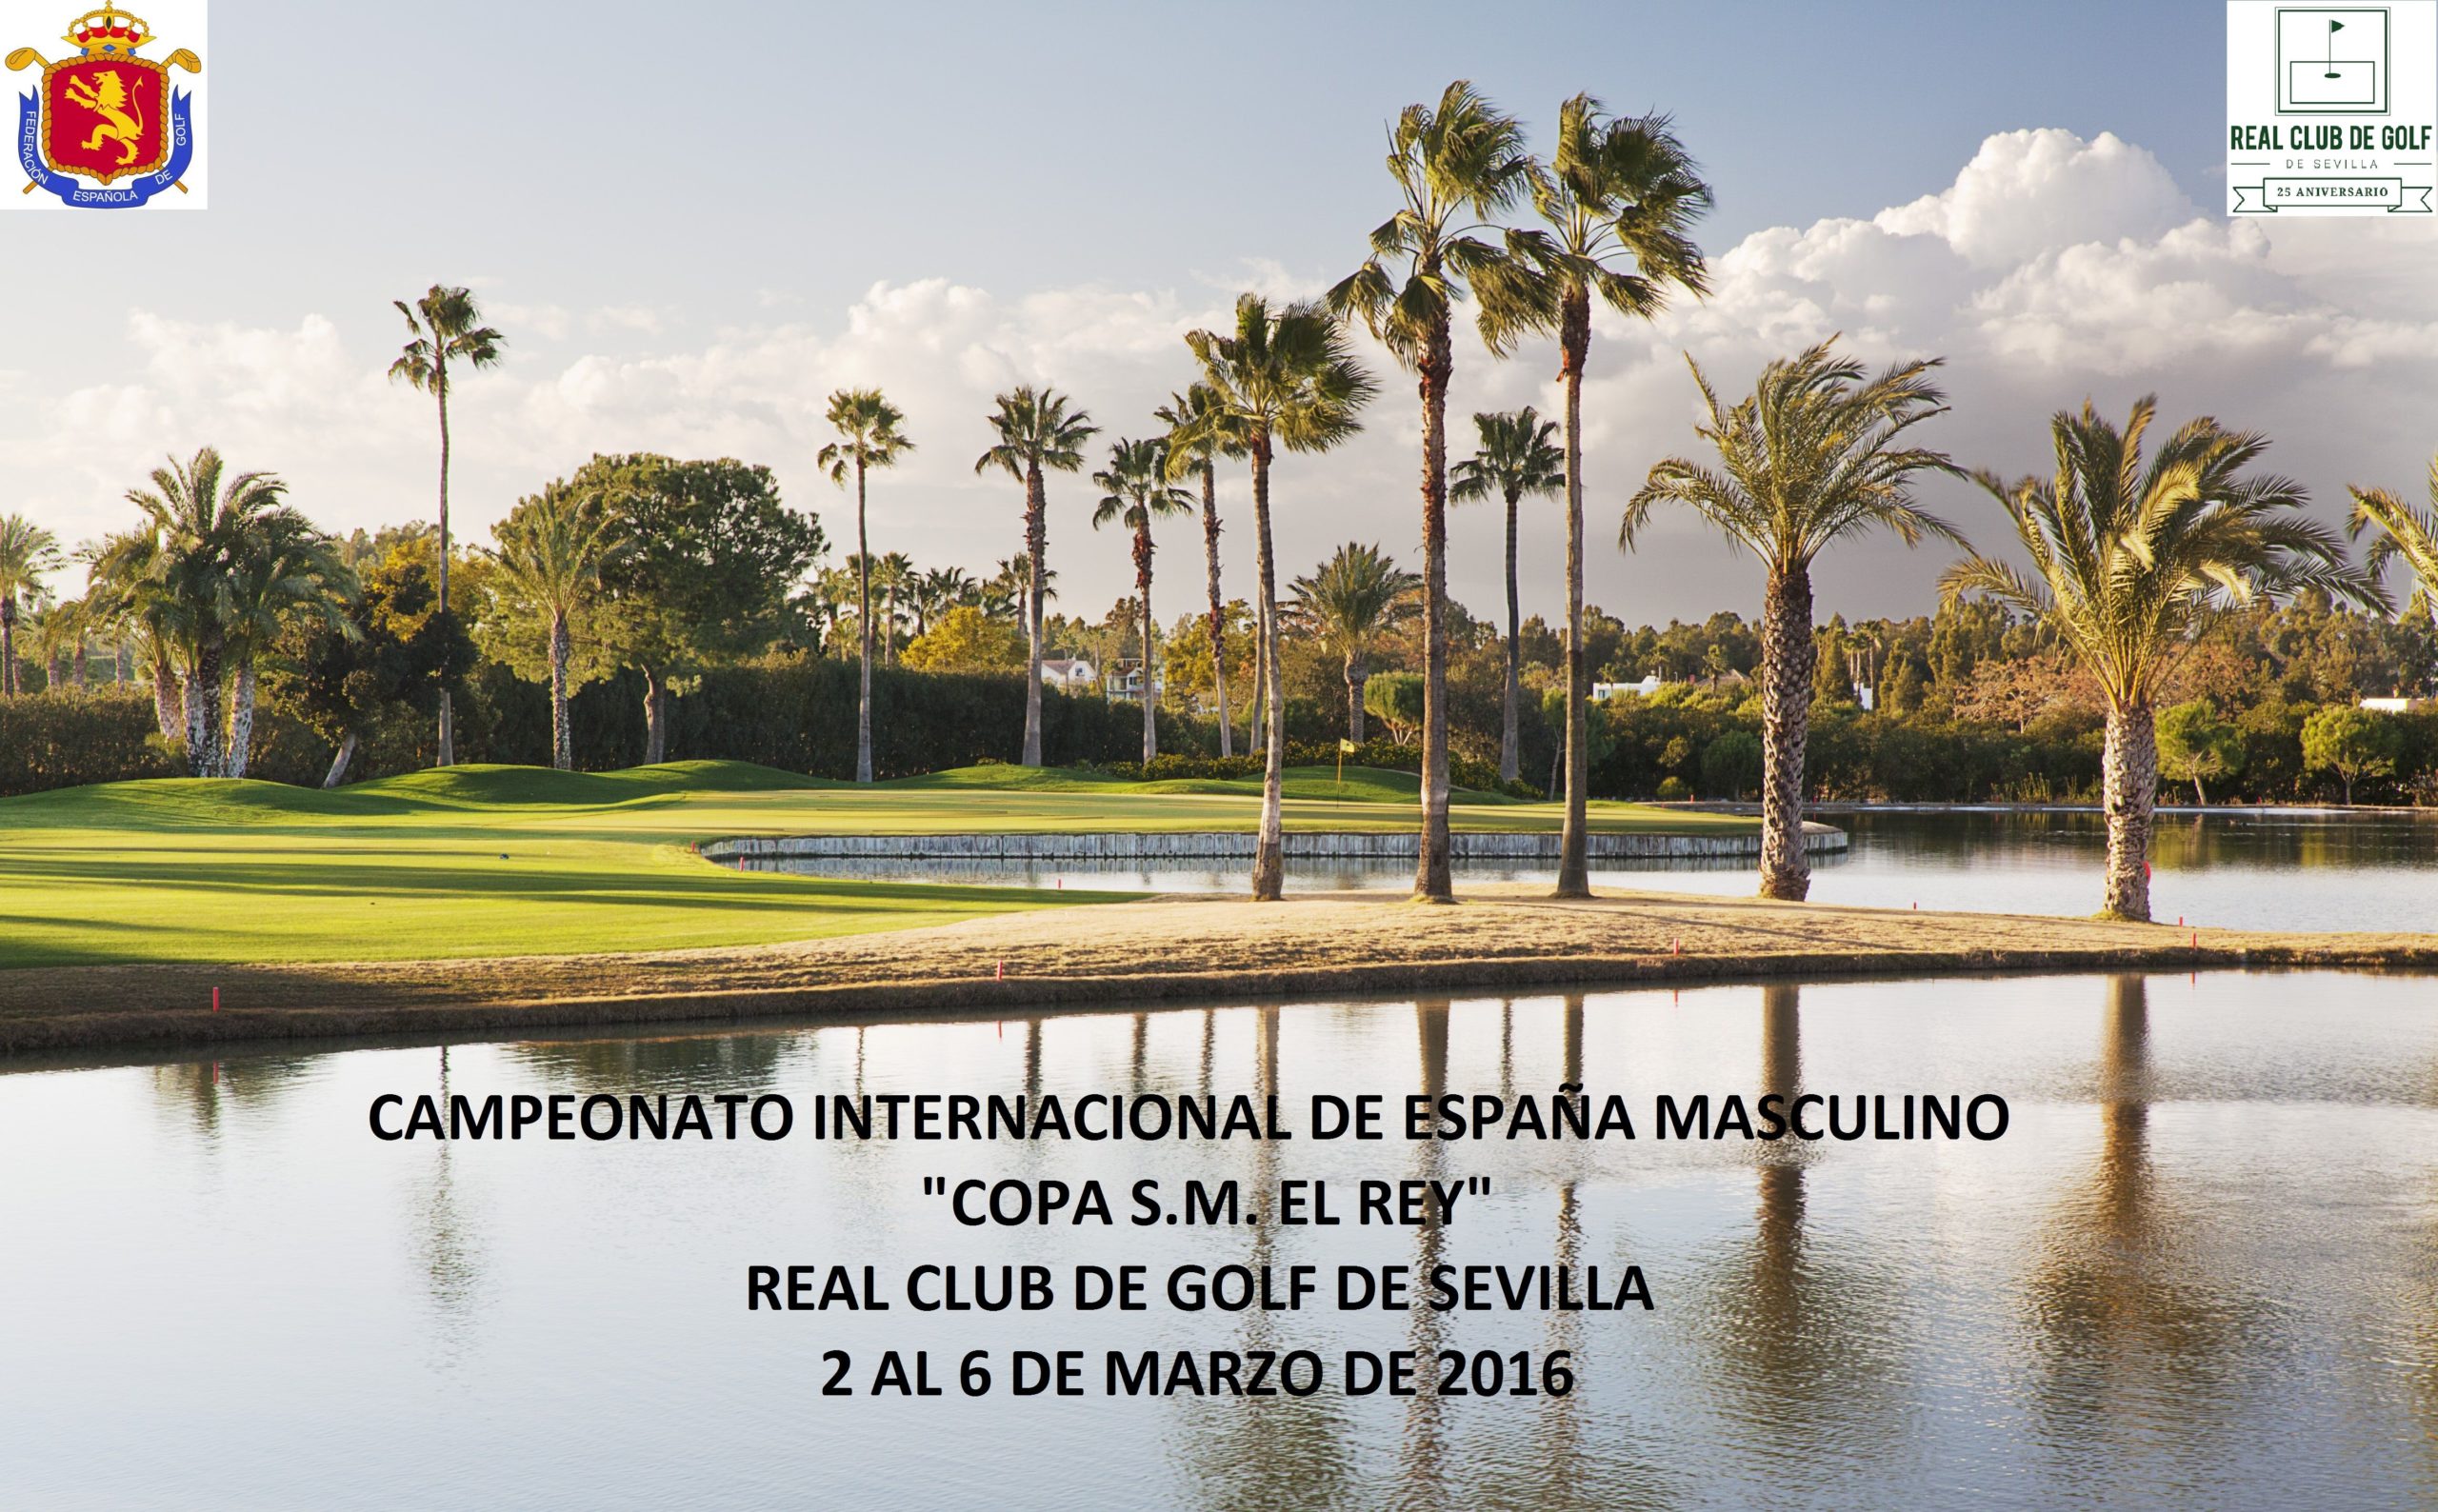 El Real Club de Golf de Sevilla, sede del Campeonato Internacional de España Masculino Copa “S.M. El Rey” de Golf del 2 al 6 de marzo